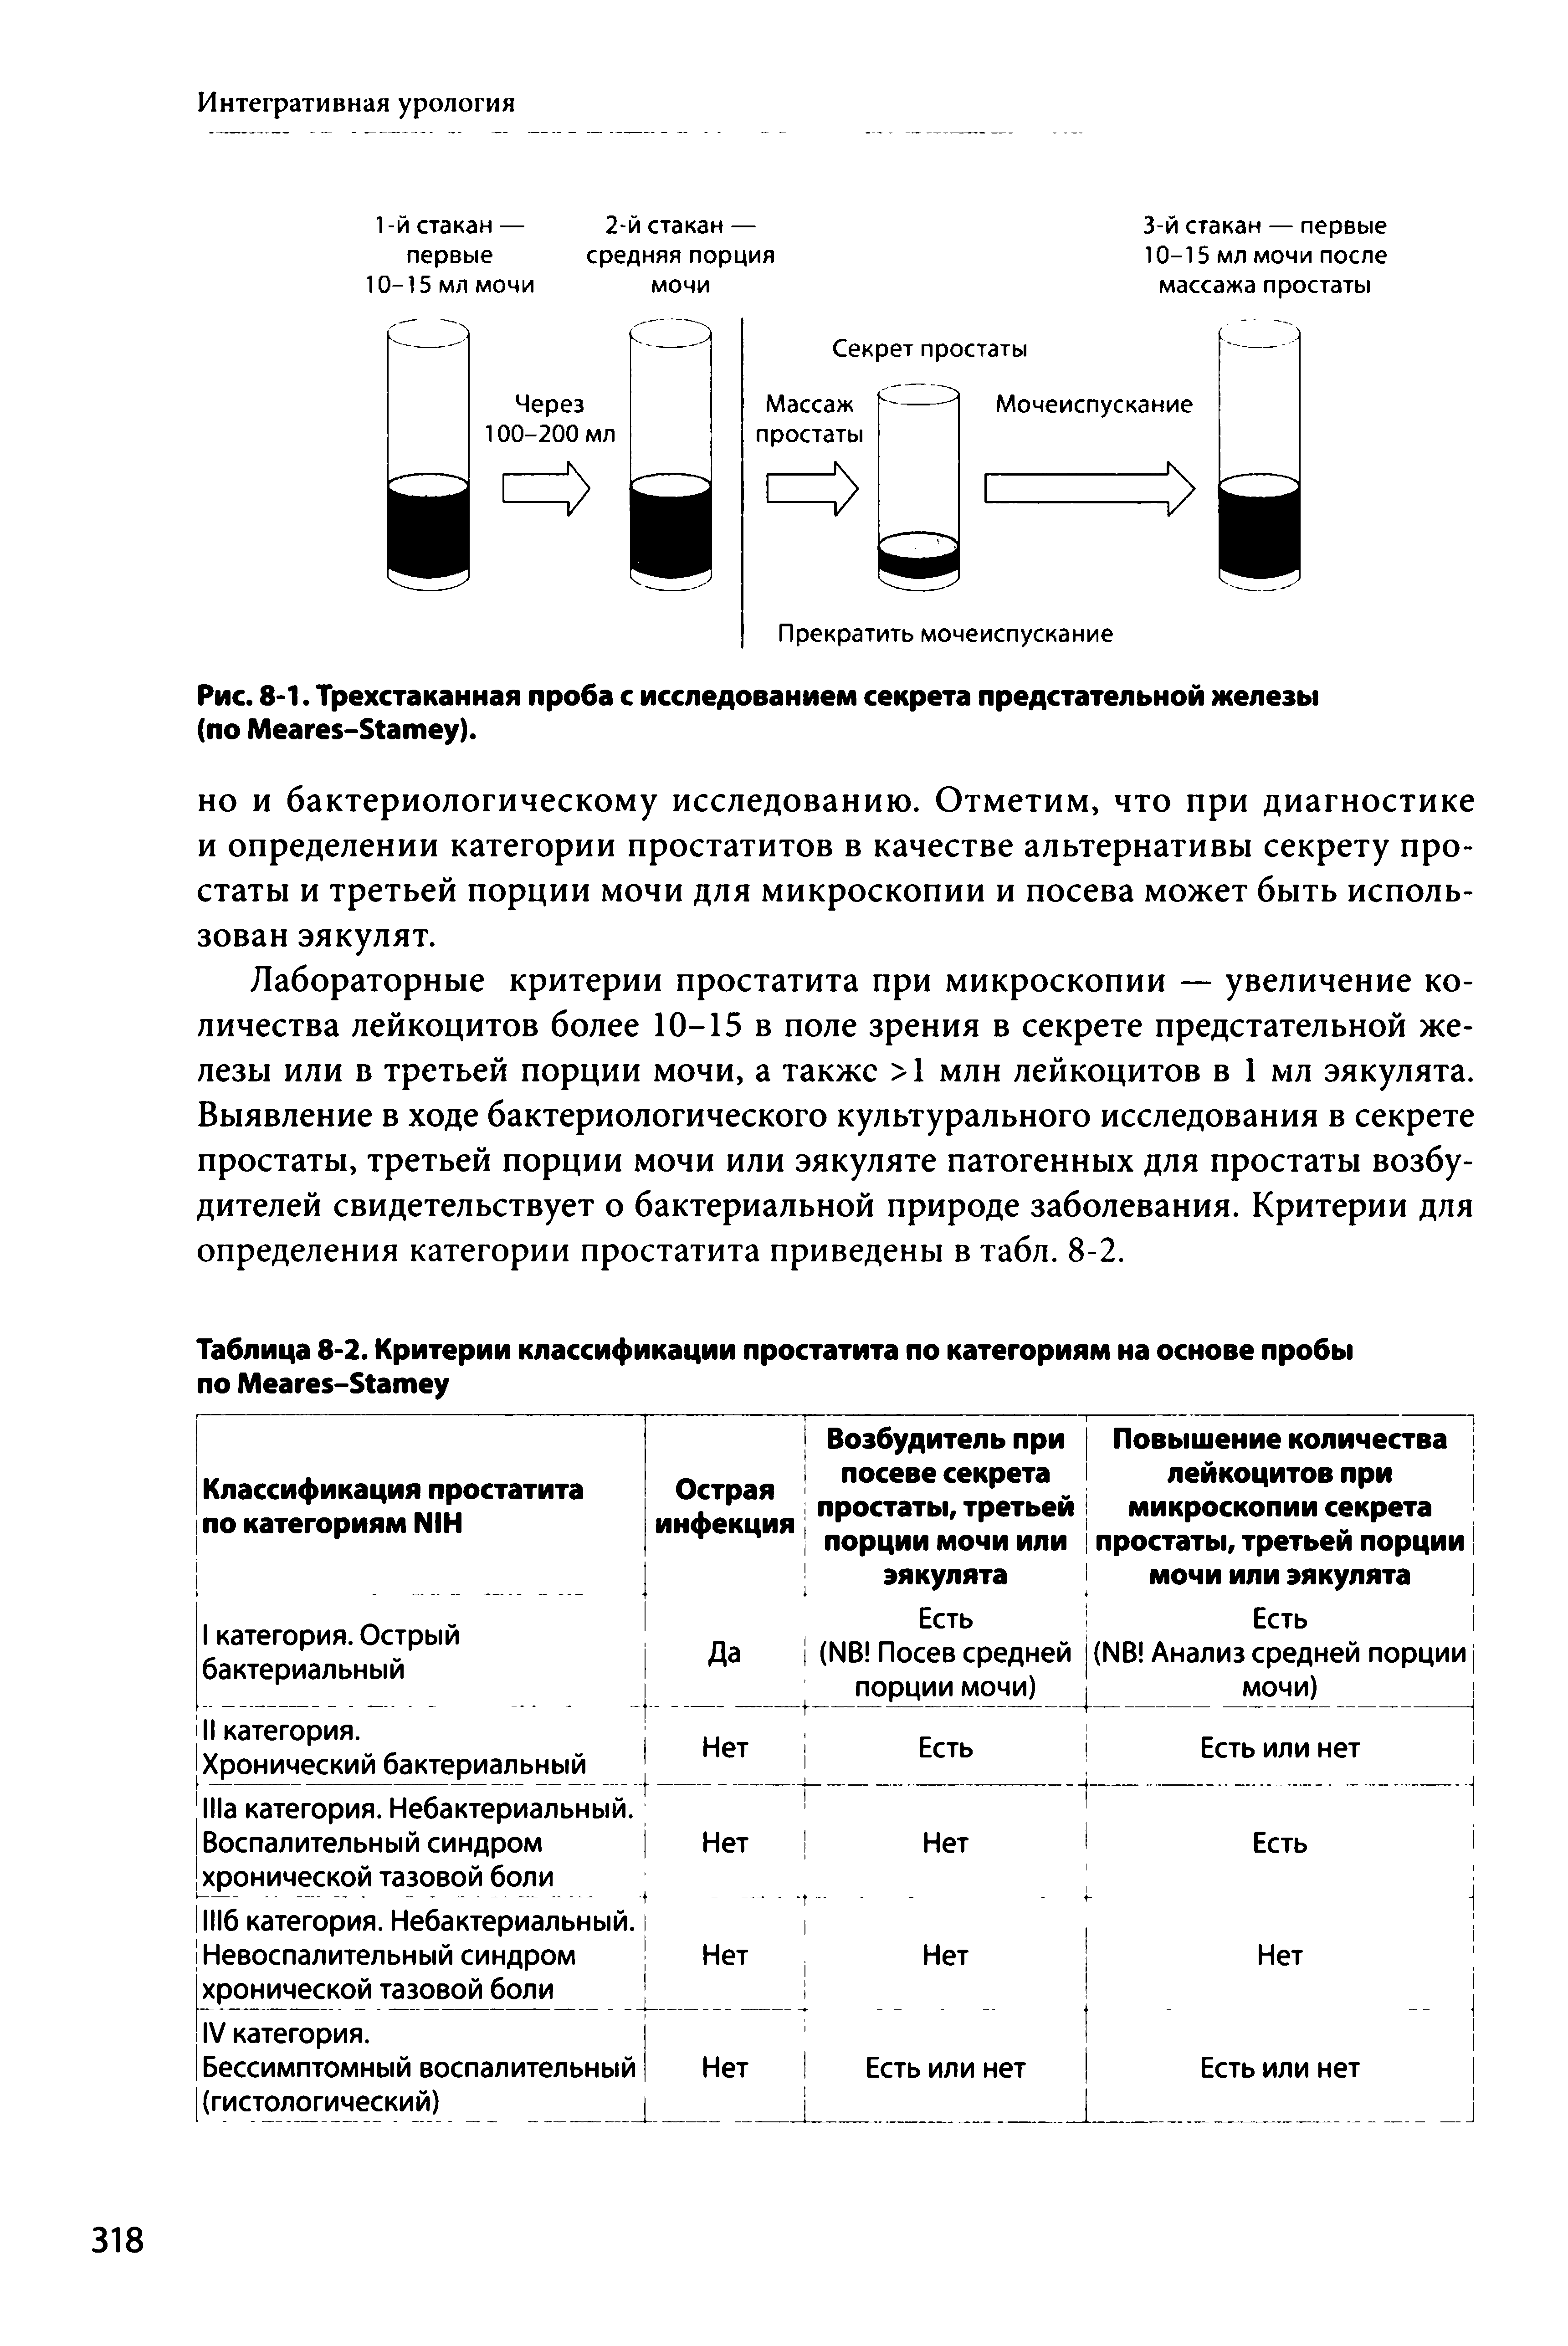 Рис. 8-1. Трехстаканная проба с исследованием секрета предстательной железы (по M -S ).